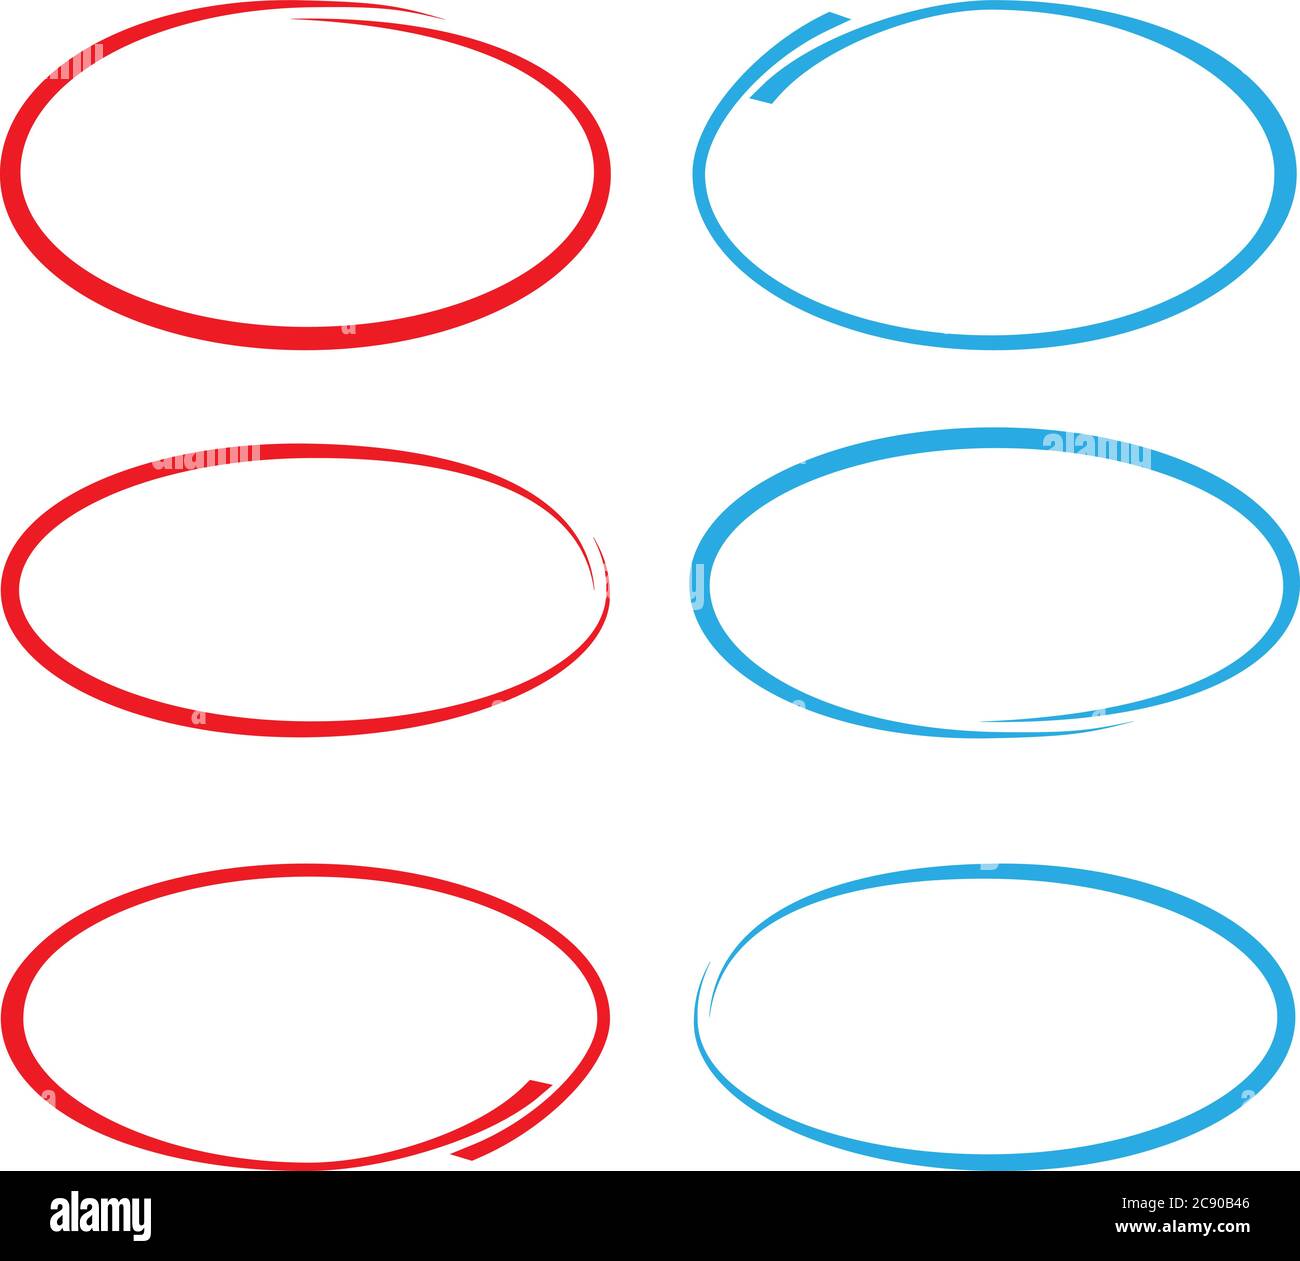 pallini circolari rossi e blu o cerchi disegnati per contrassegnare isolati su illustrazioni vettoriali bianche Illustrazione Vettoriale